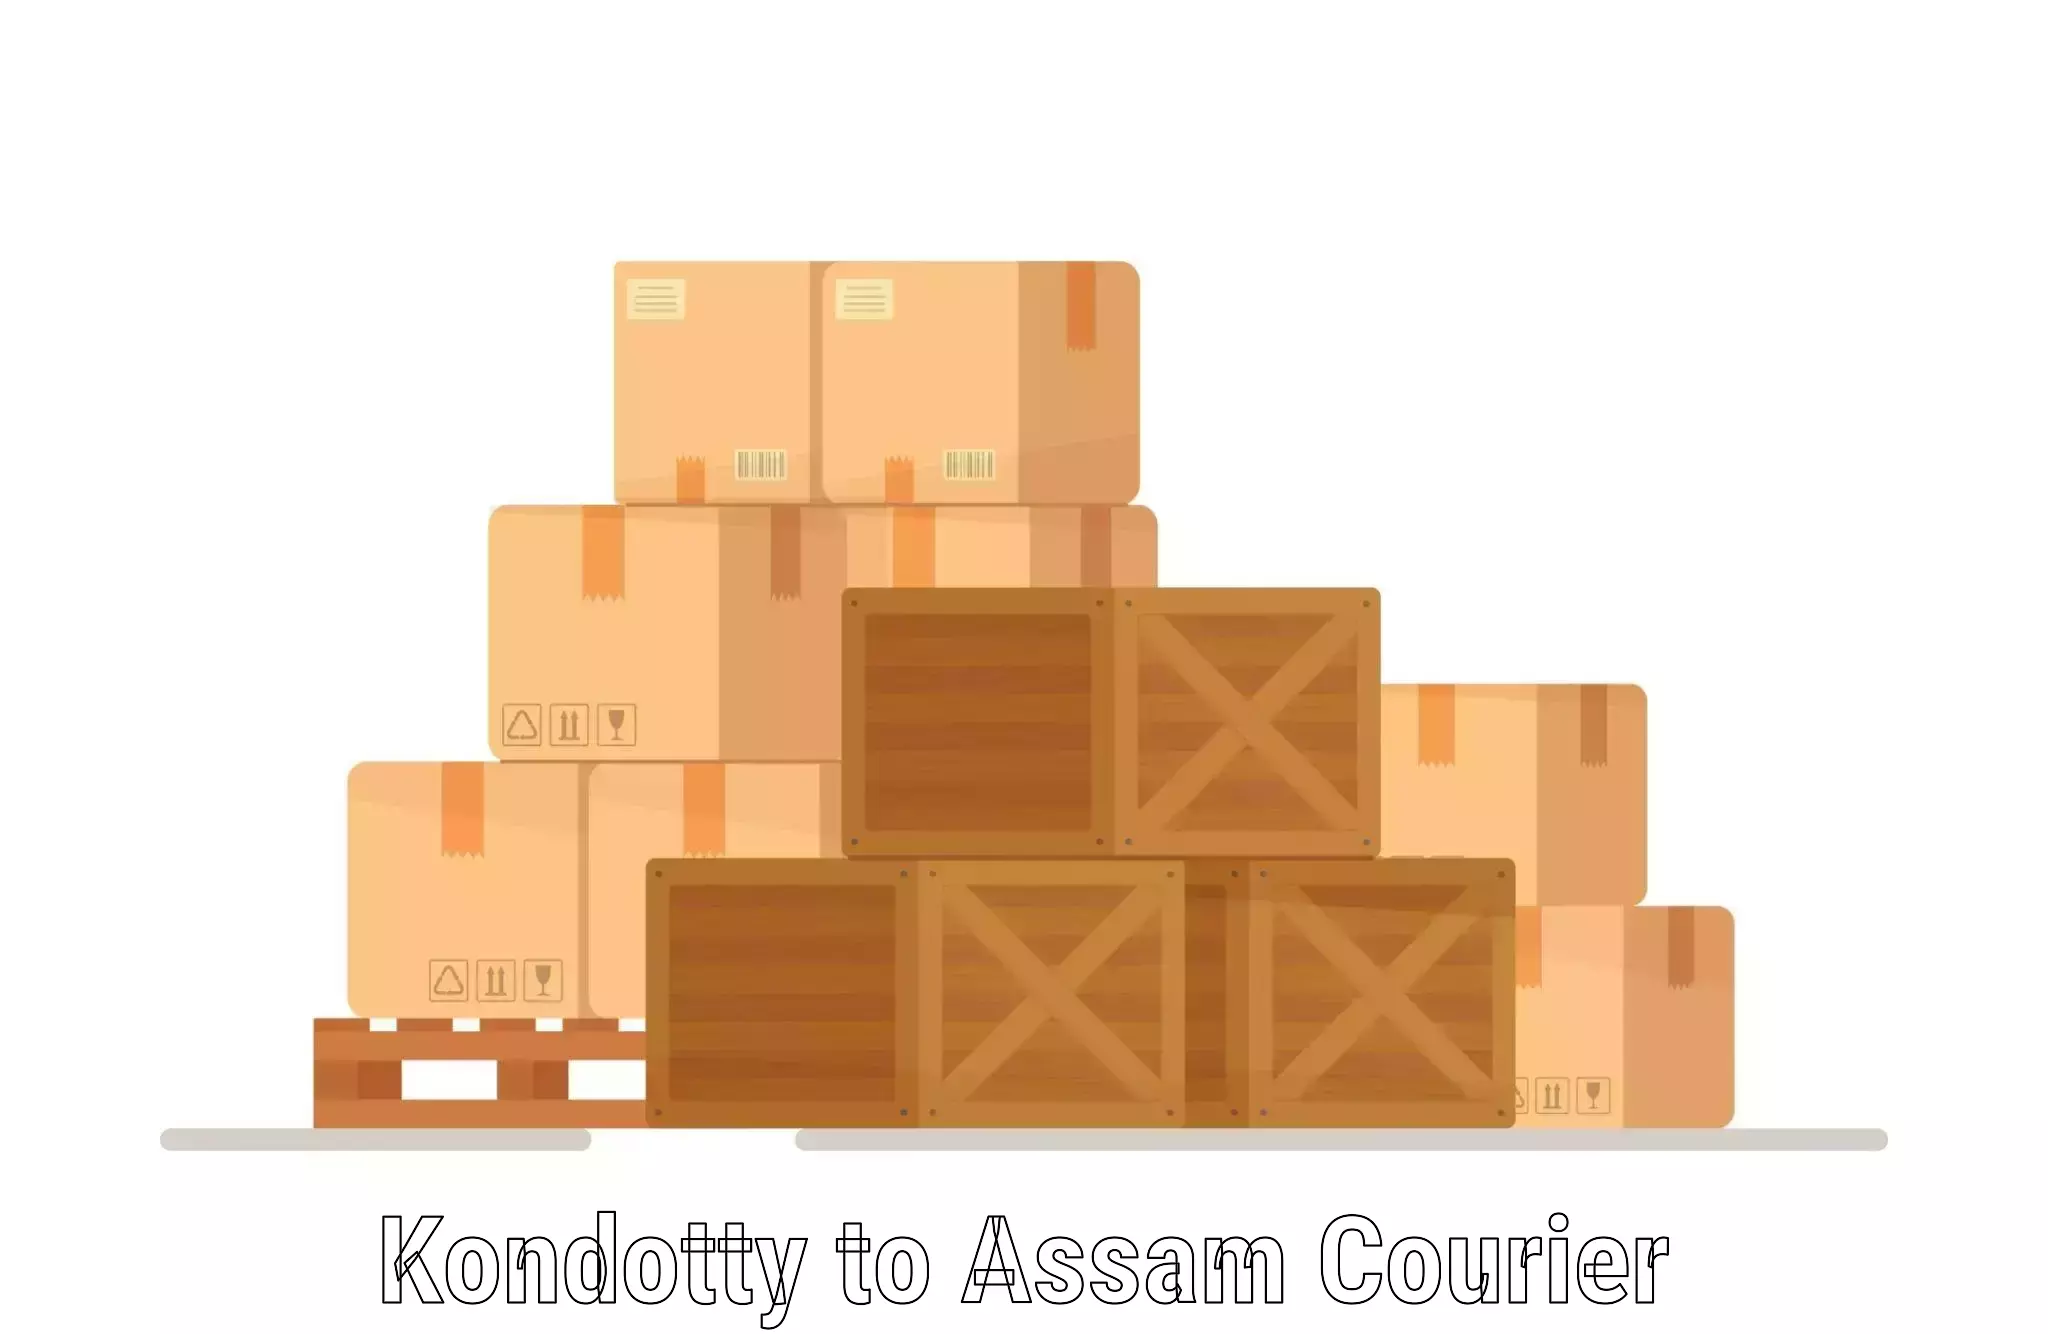 Cash on delivery service Kondotty to Tezpur University